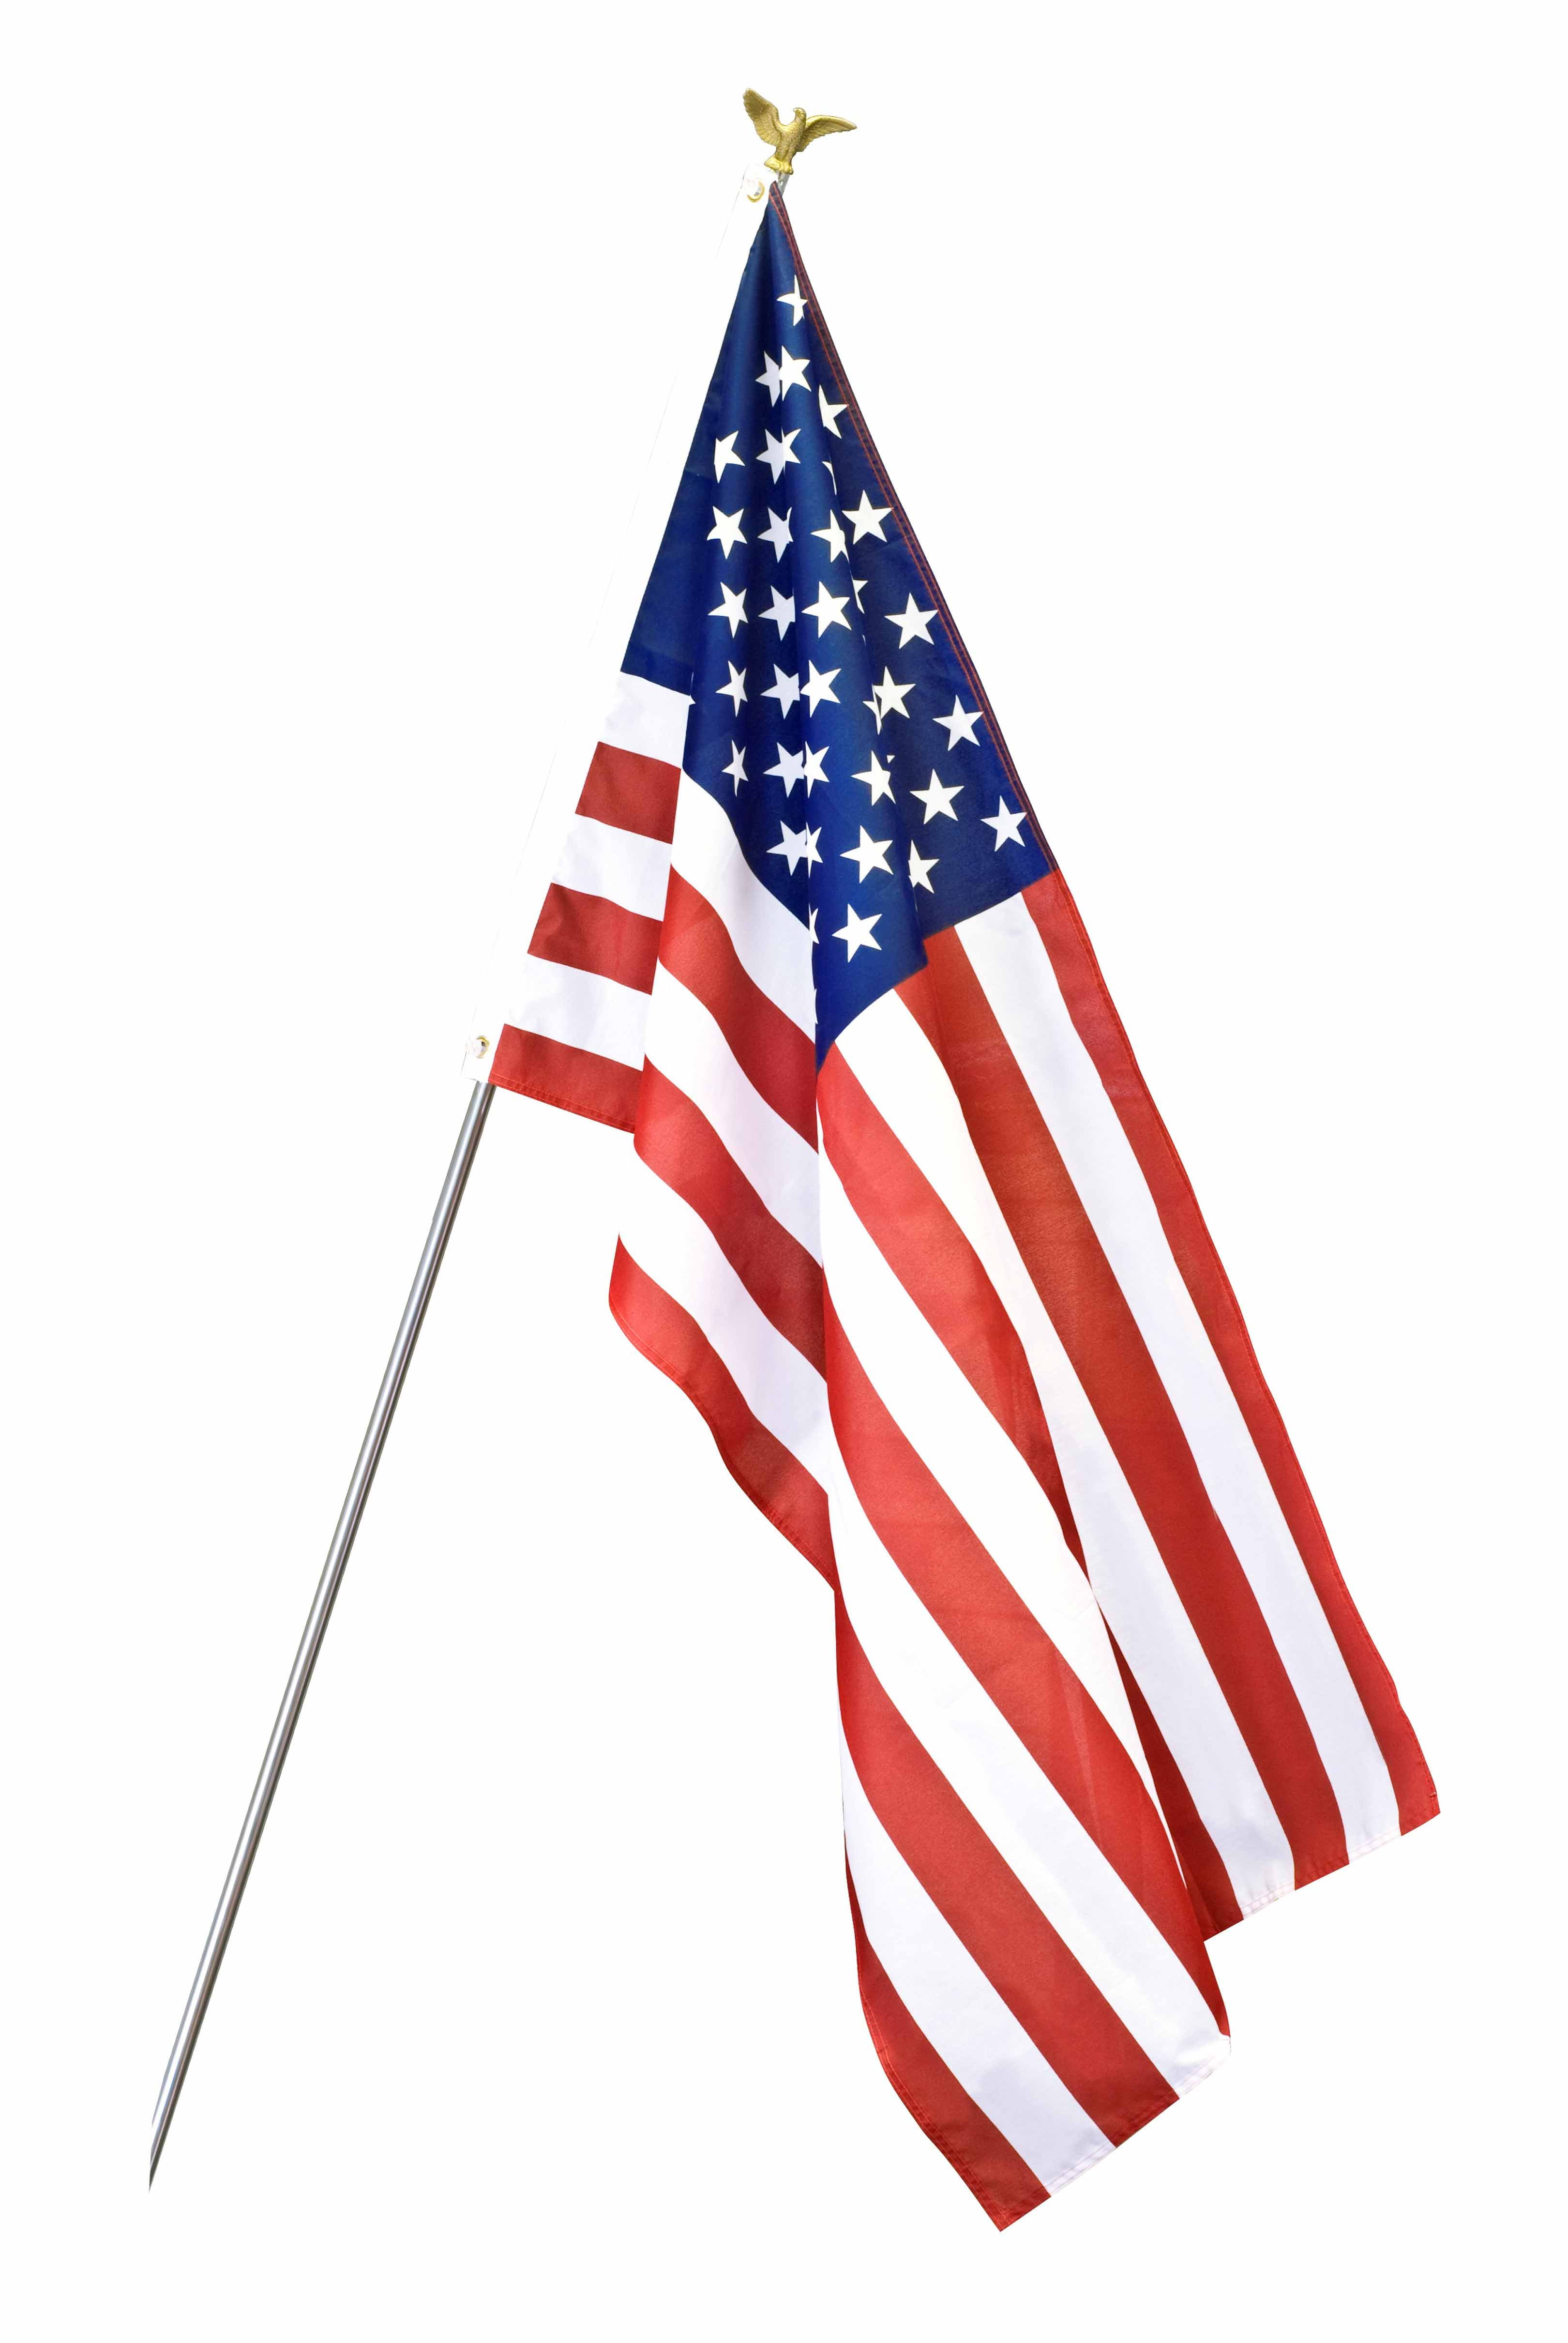 Wholesale 10pcs 3x5 FT USA US American Flag Stars Grommet United States Flagpole 